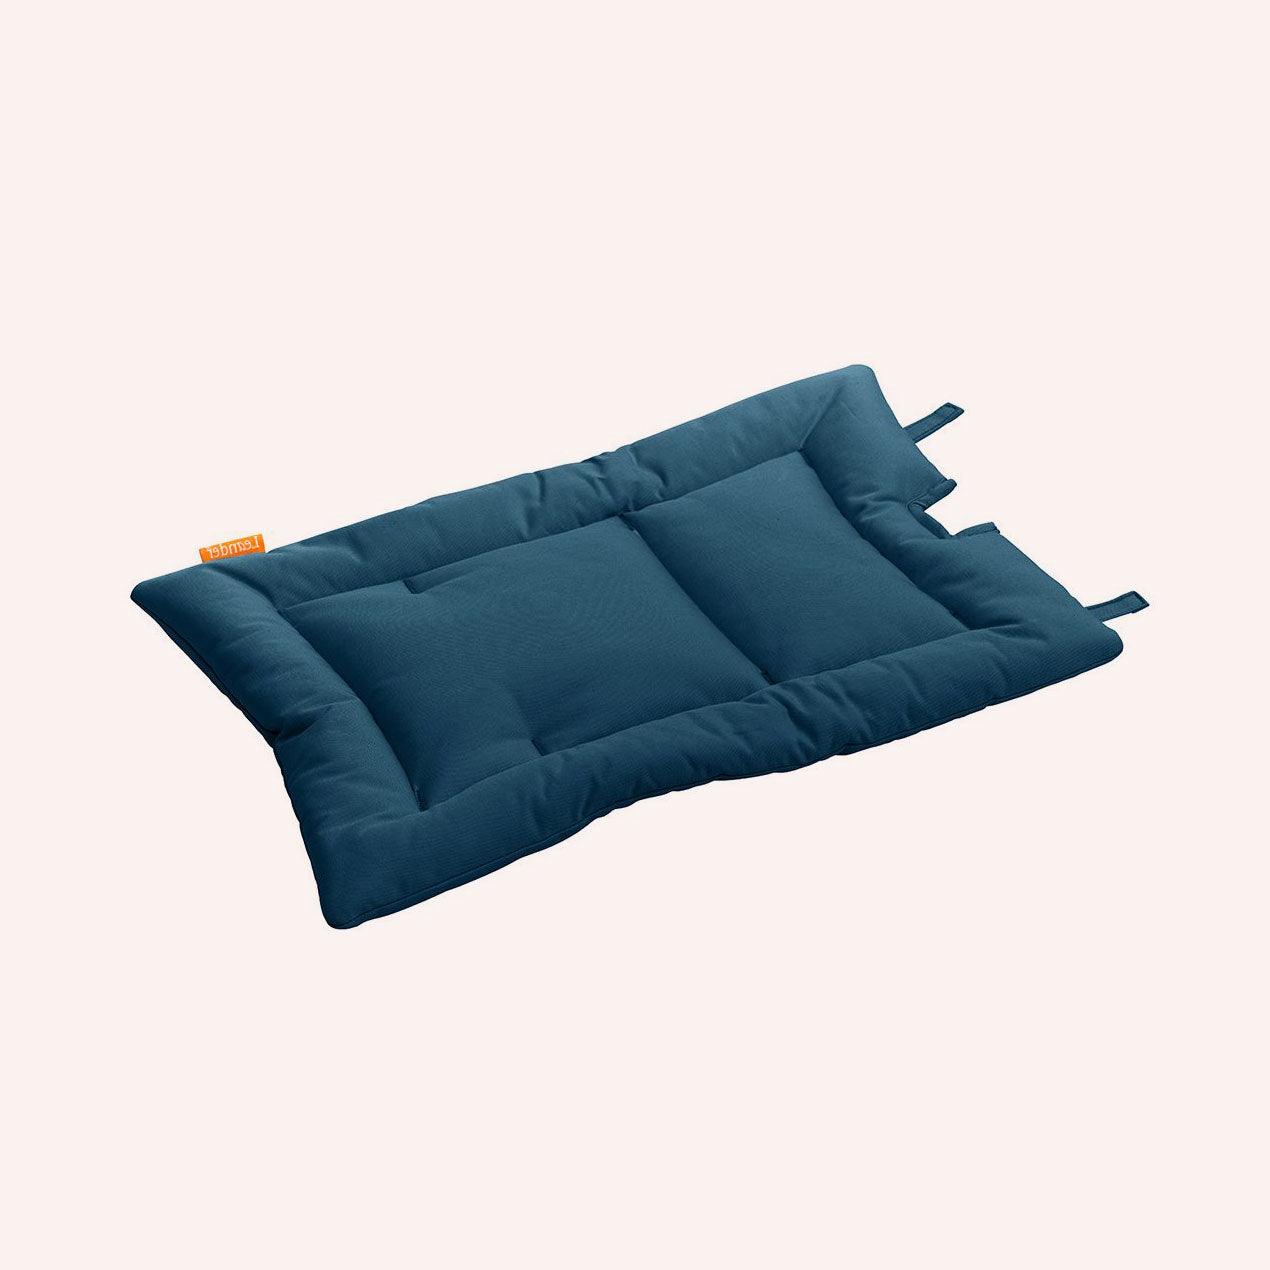 Cushion For Classic High Chair - Dark Blue